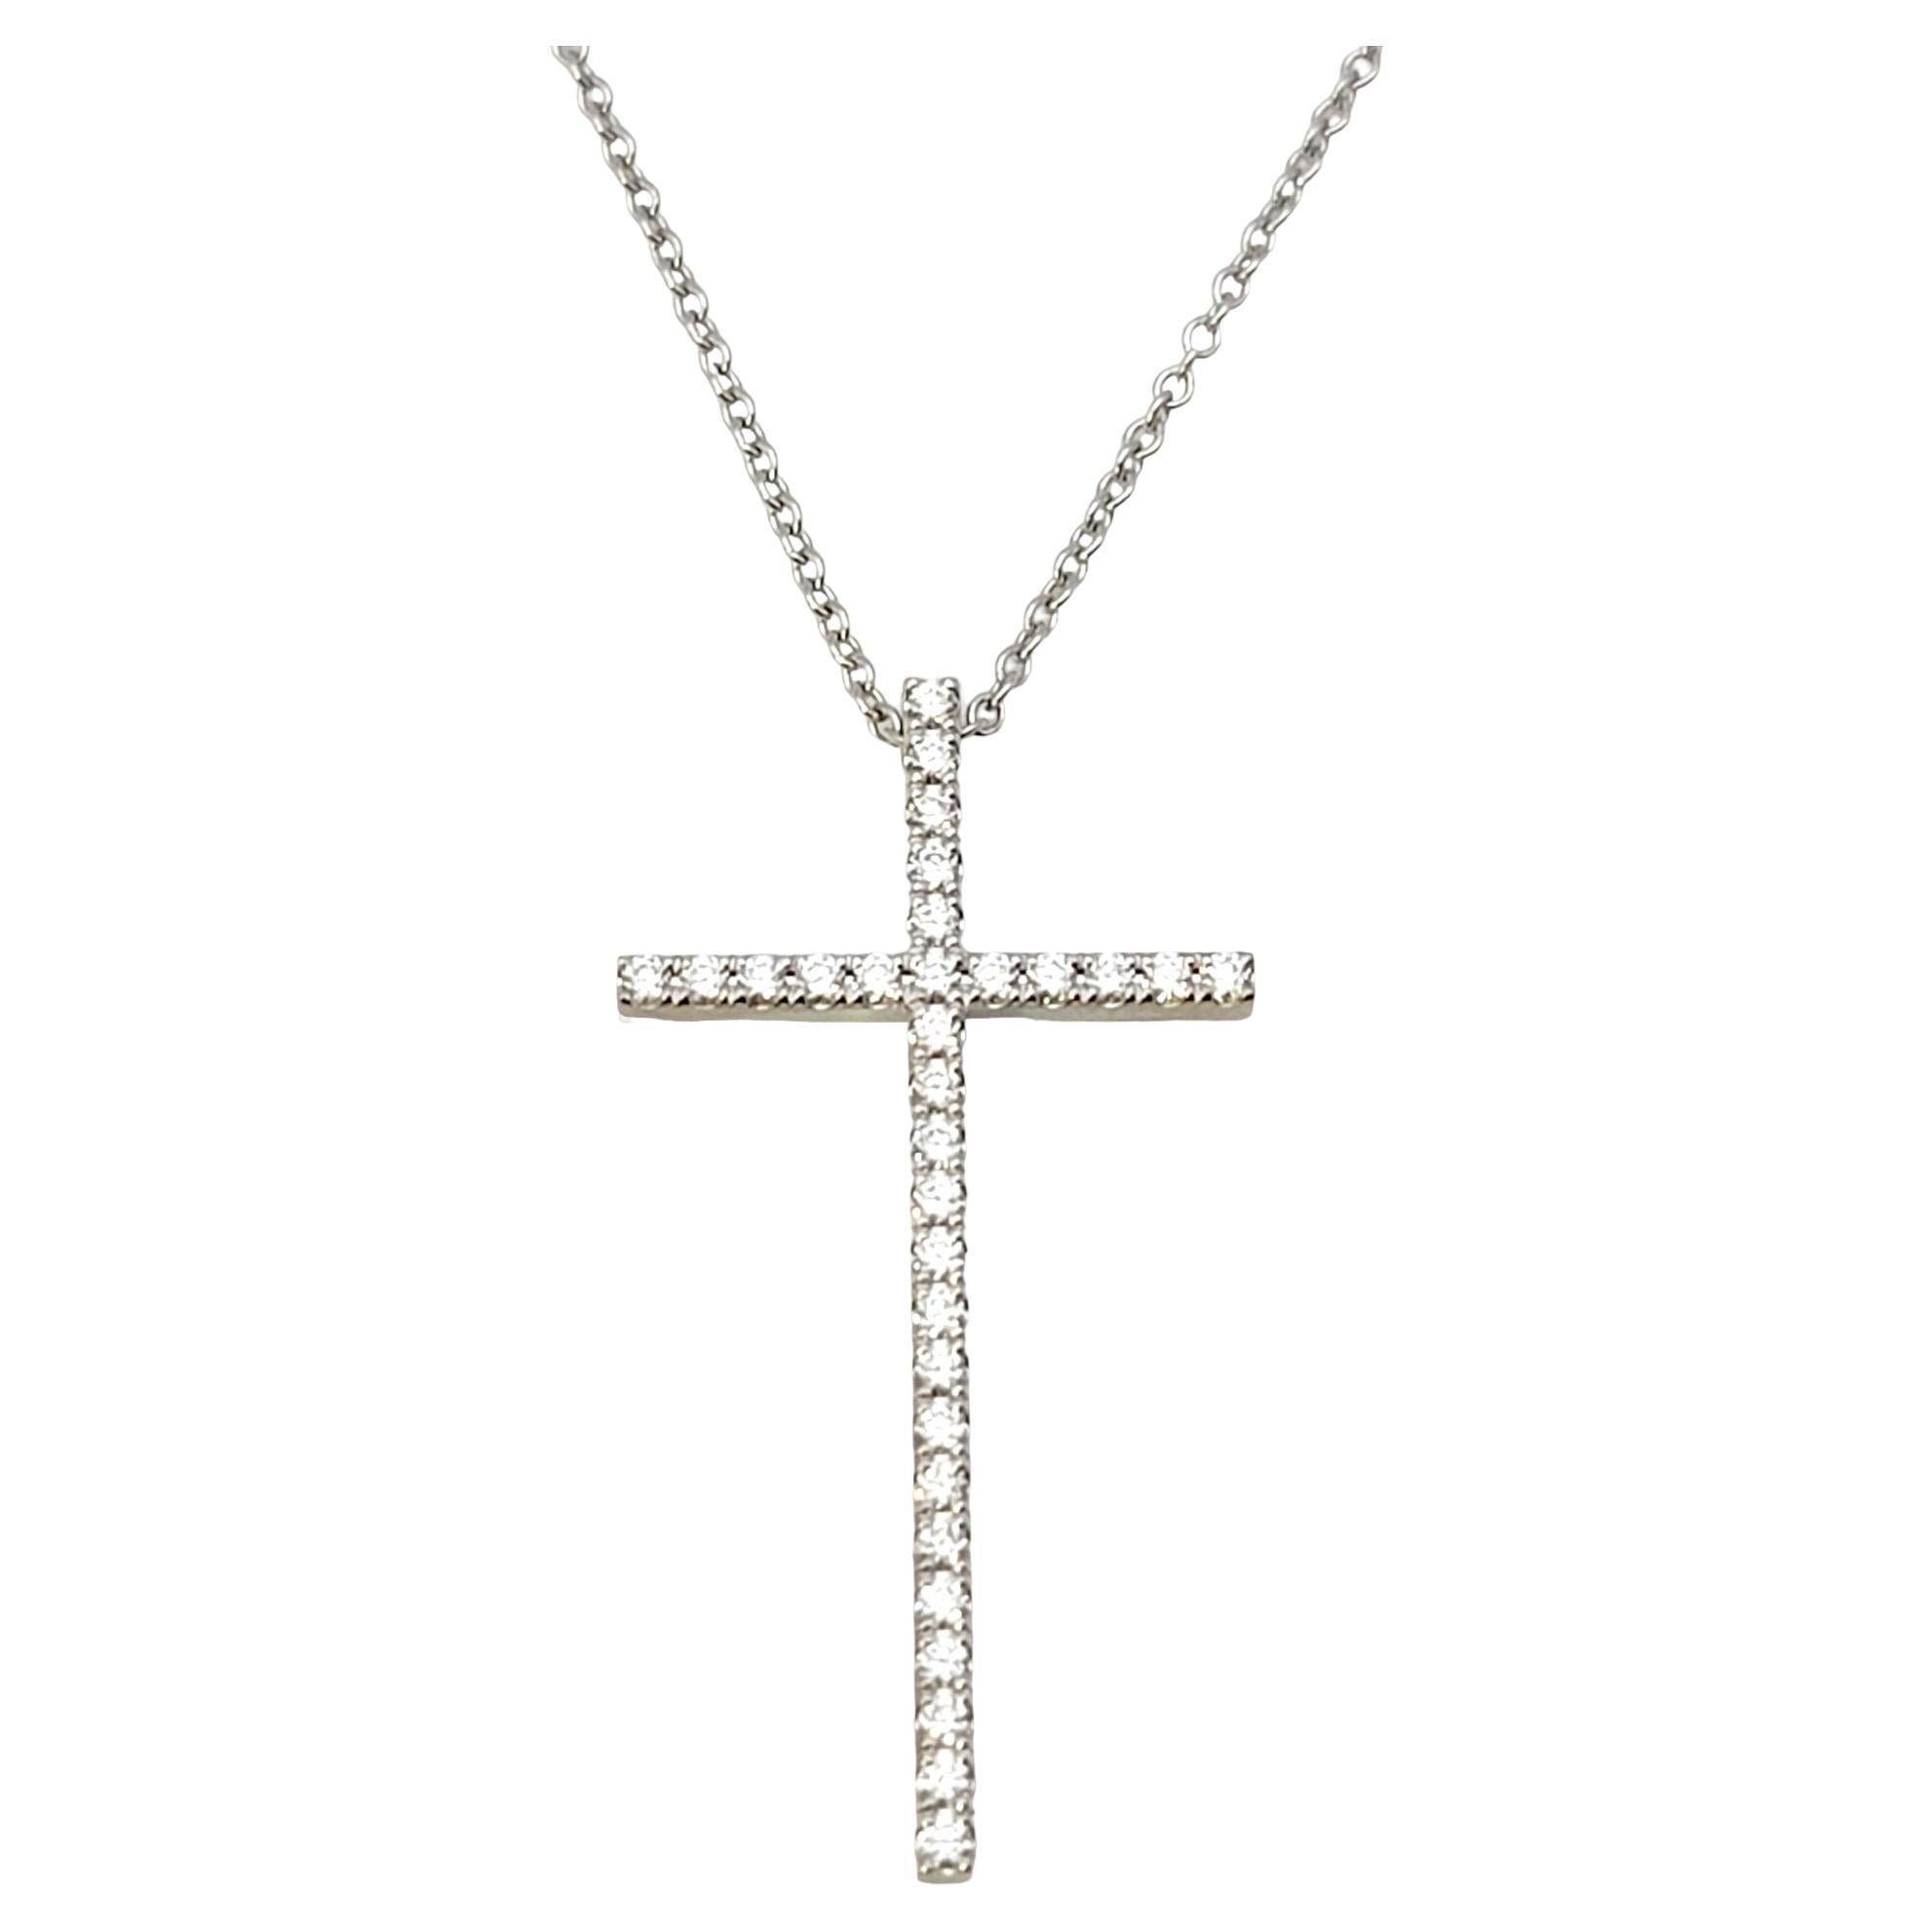 Tiffany & Co. Collier pendentif croix étroite en or blanc 18 carats et diamants